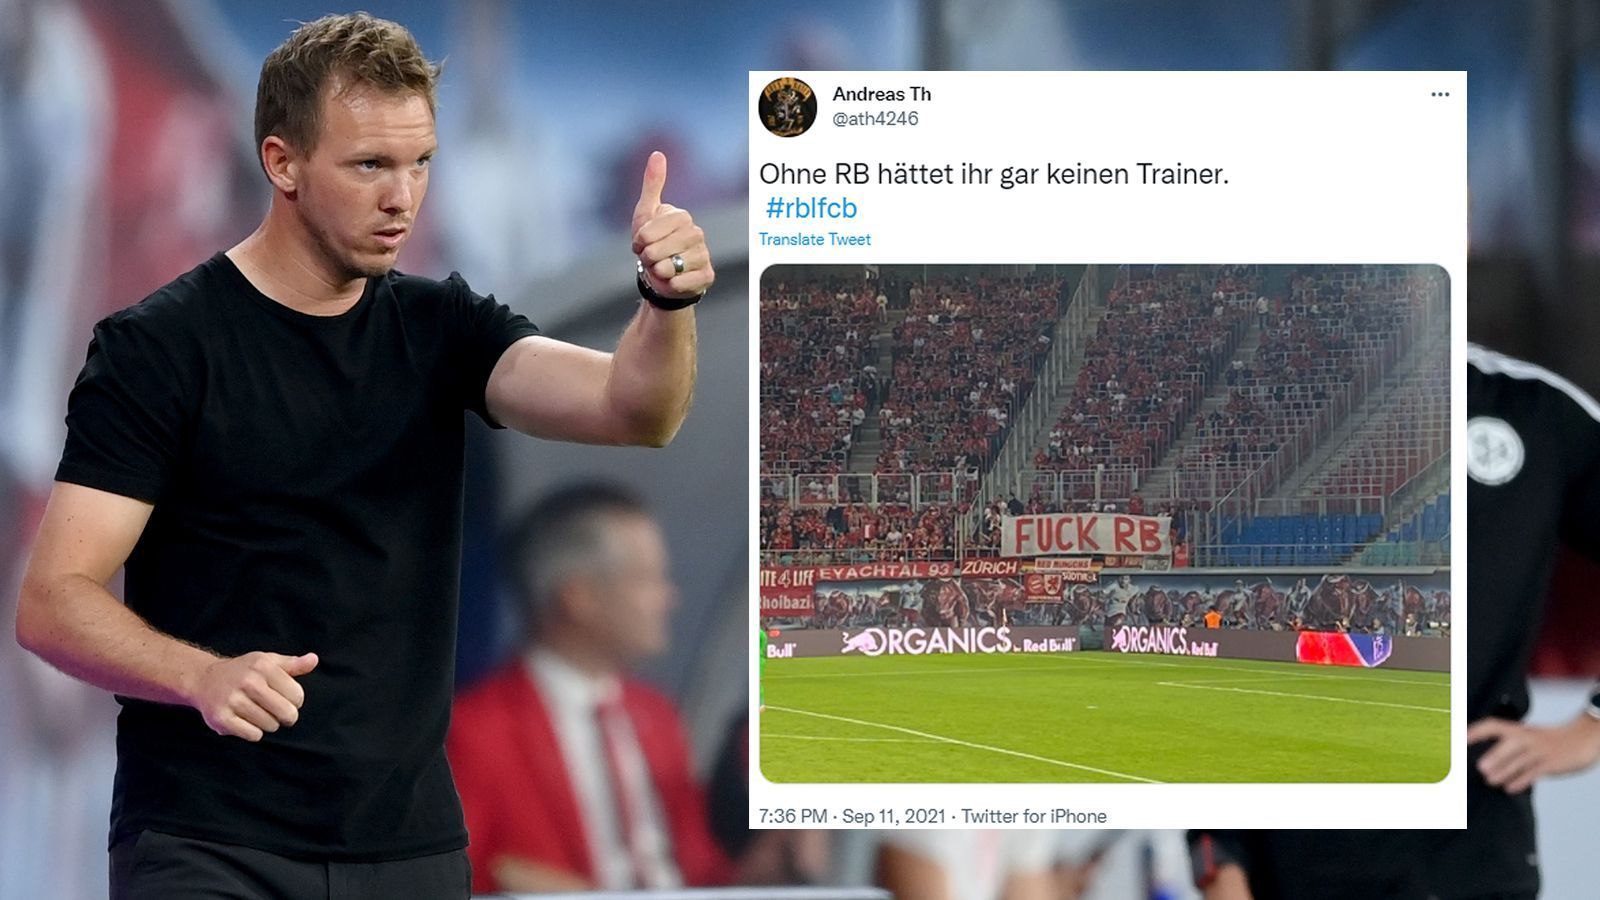 
                <strong>Guter Konter</strong><br>
                "Ohne RB hättet ihr gar keinen Trainer", schreibt Twitter-User "ath4246" zu einem Bild der Beleidigungen der Bayern-Fans in Leipzig. 
              